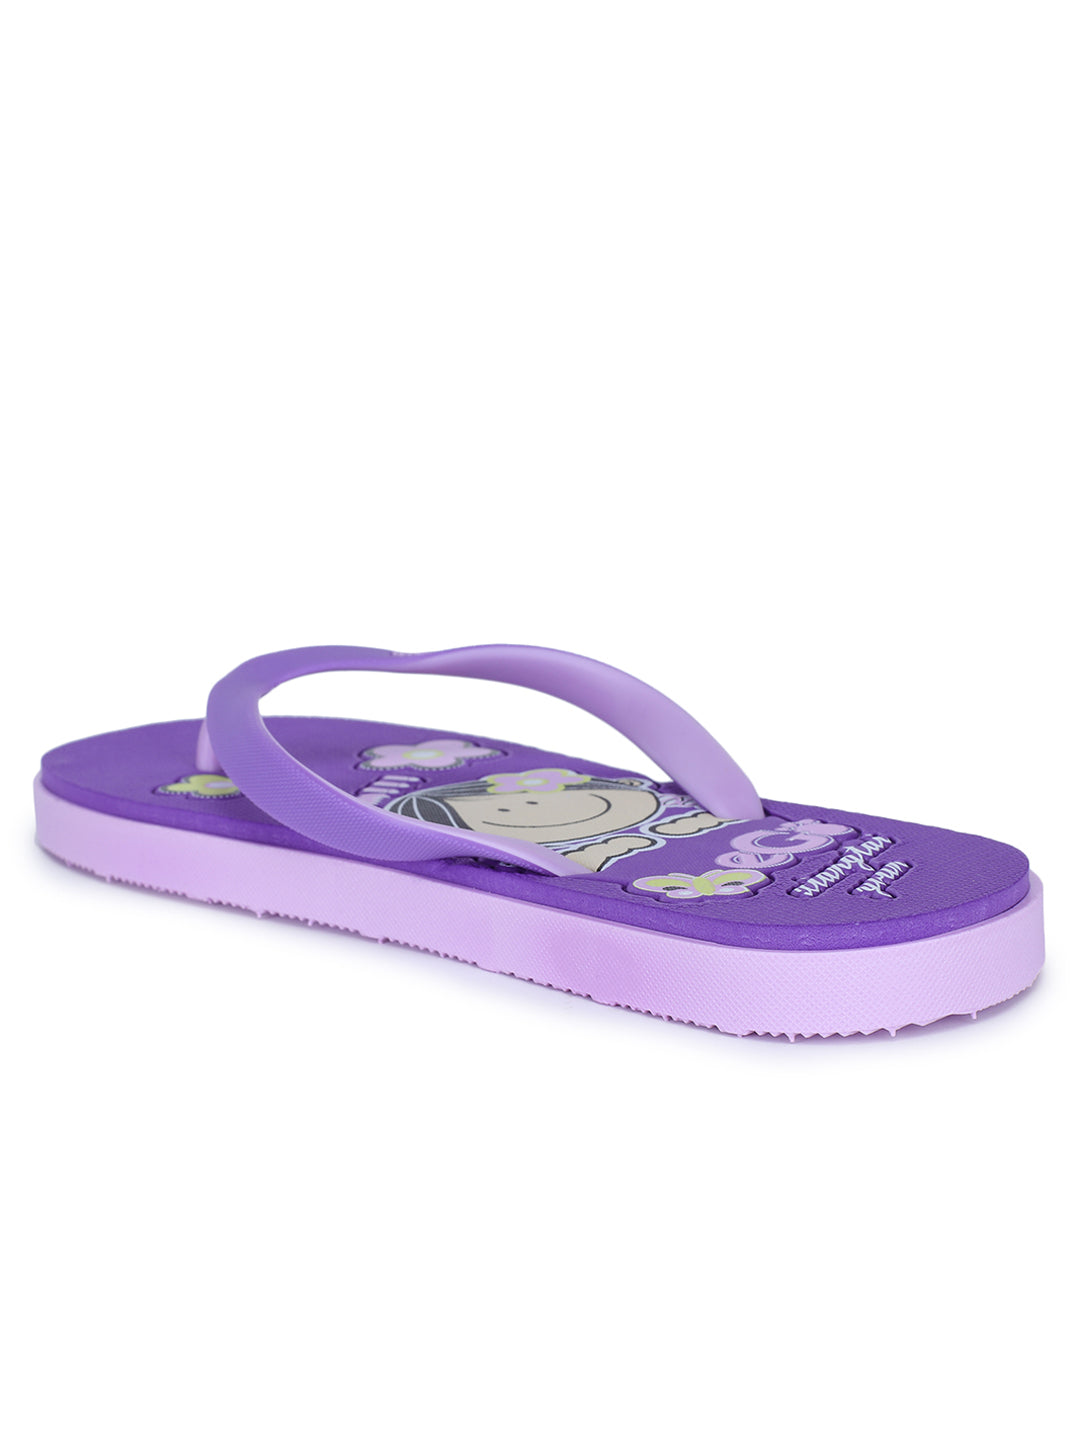 Footwear, Women Footwear, Purple Flip-Flops